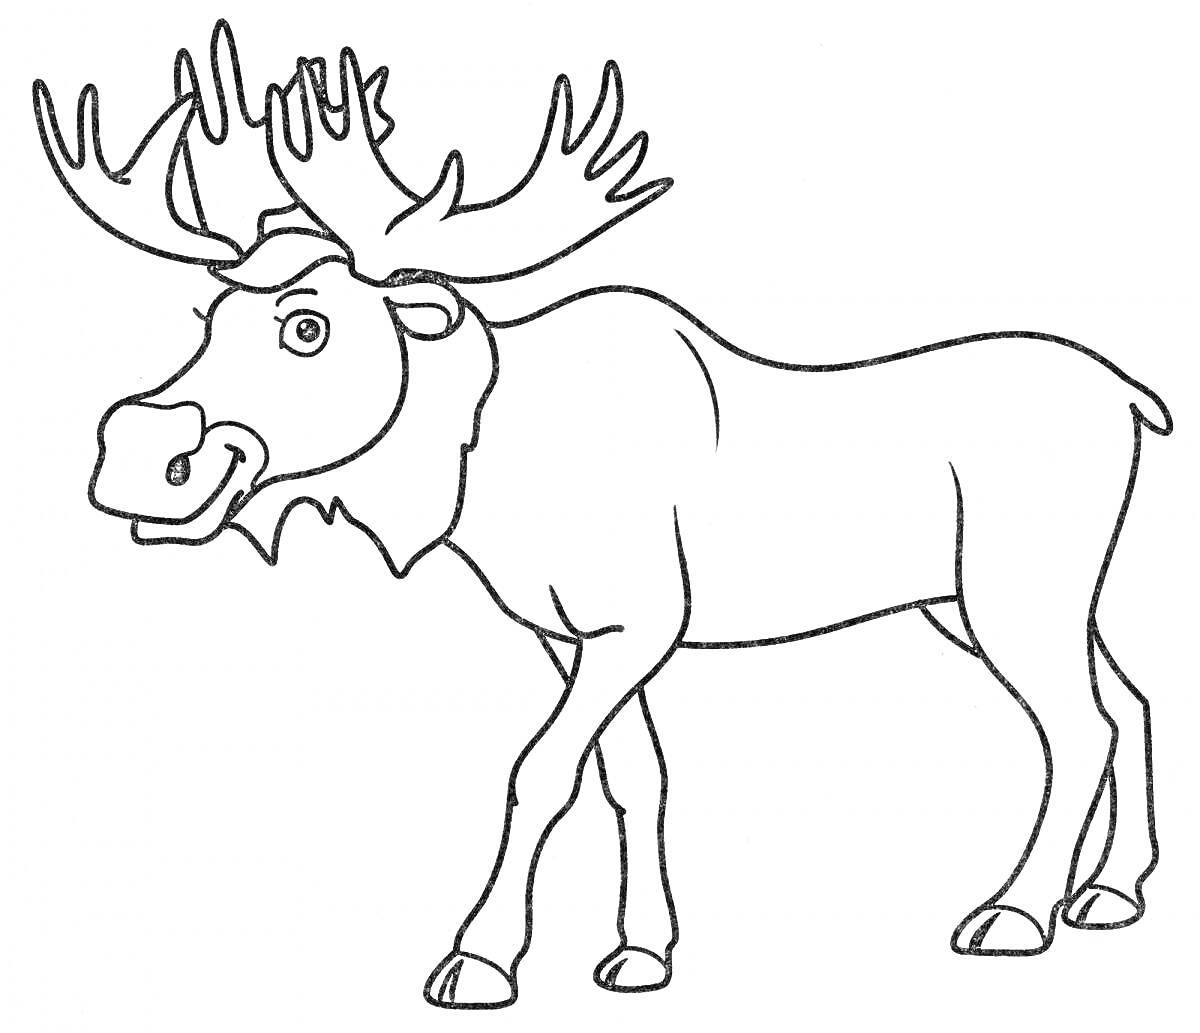 Раскраска Раскраска с лосем, изображен стоящий лось с большими рогами